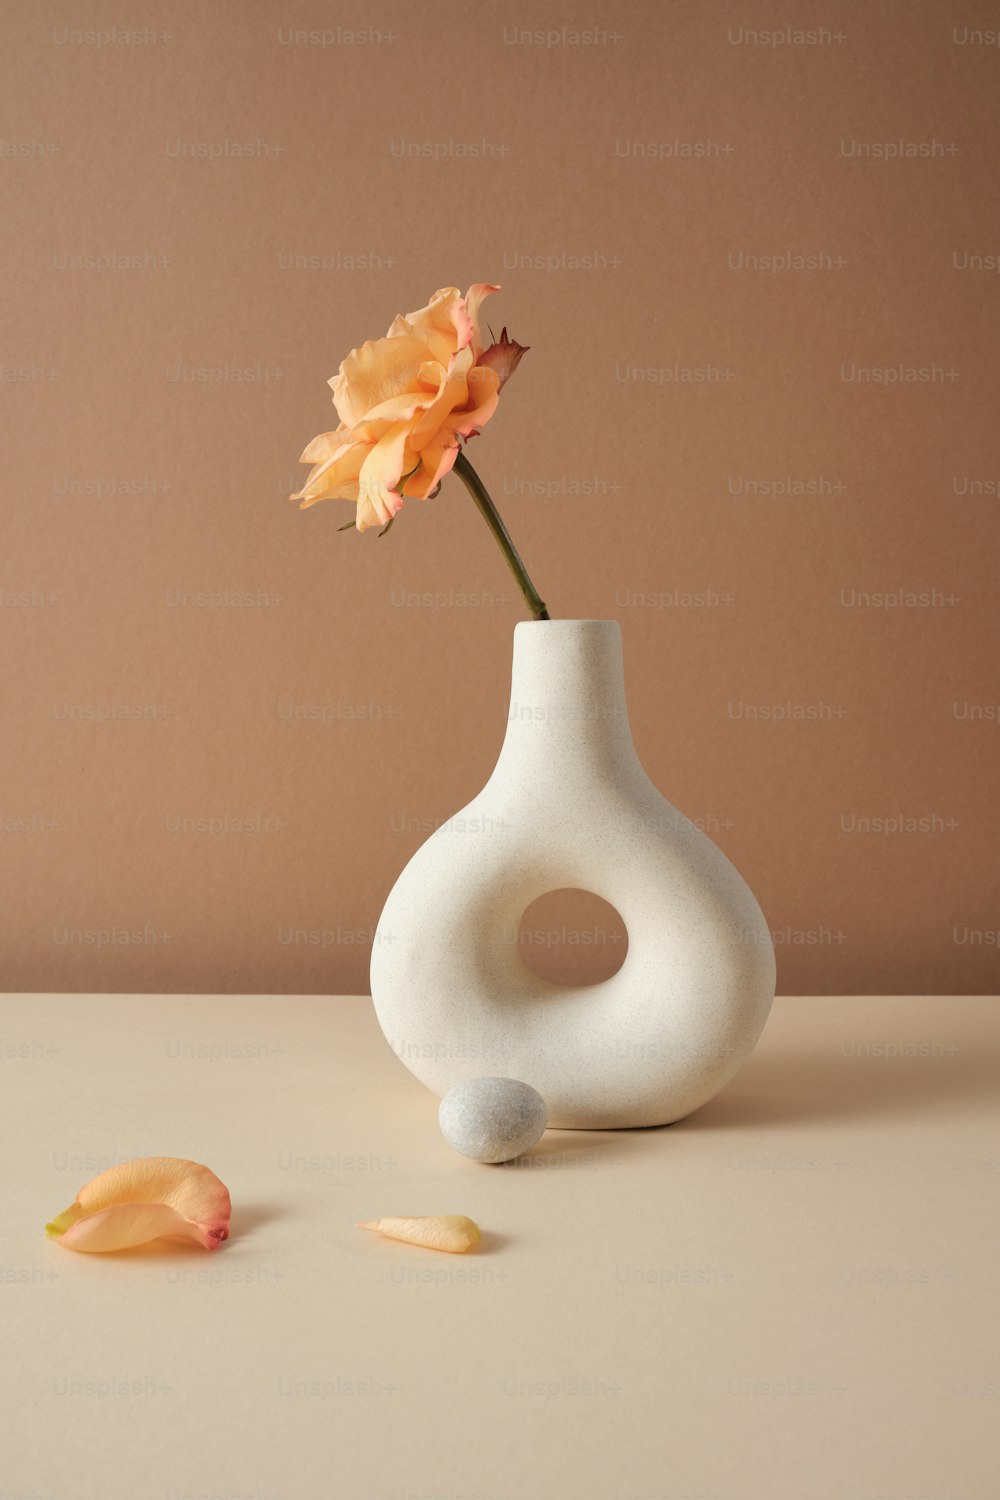 一輪の花が入った白い花瓶